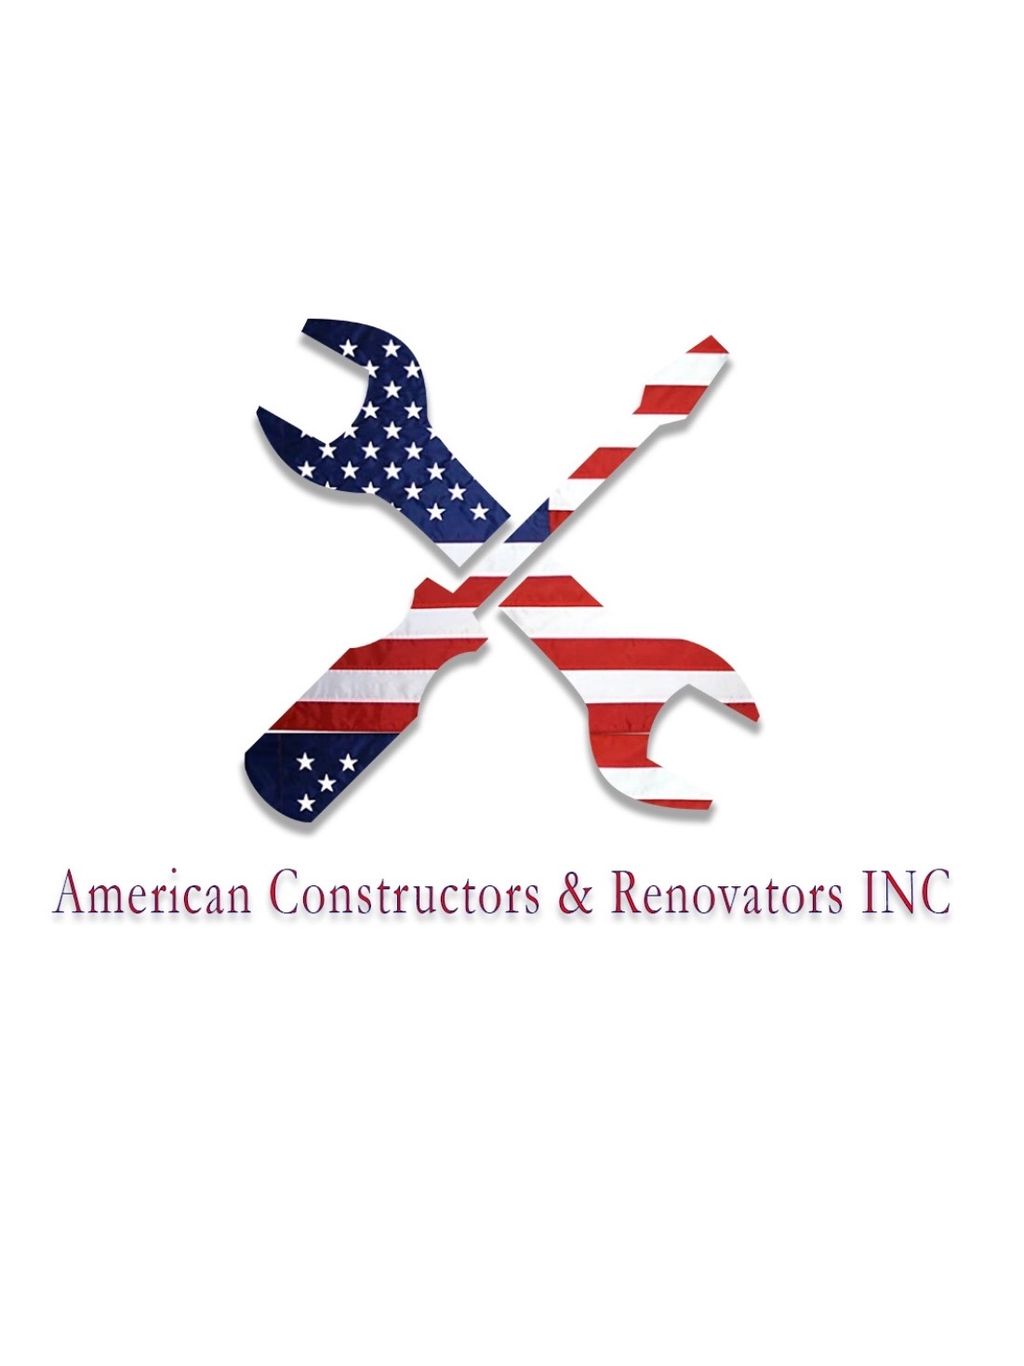 American constructors & renovators inc.